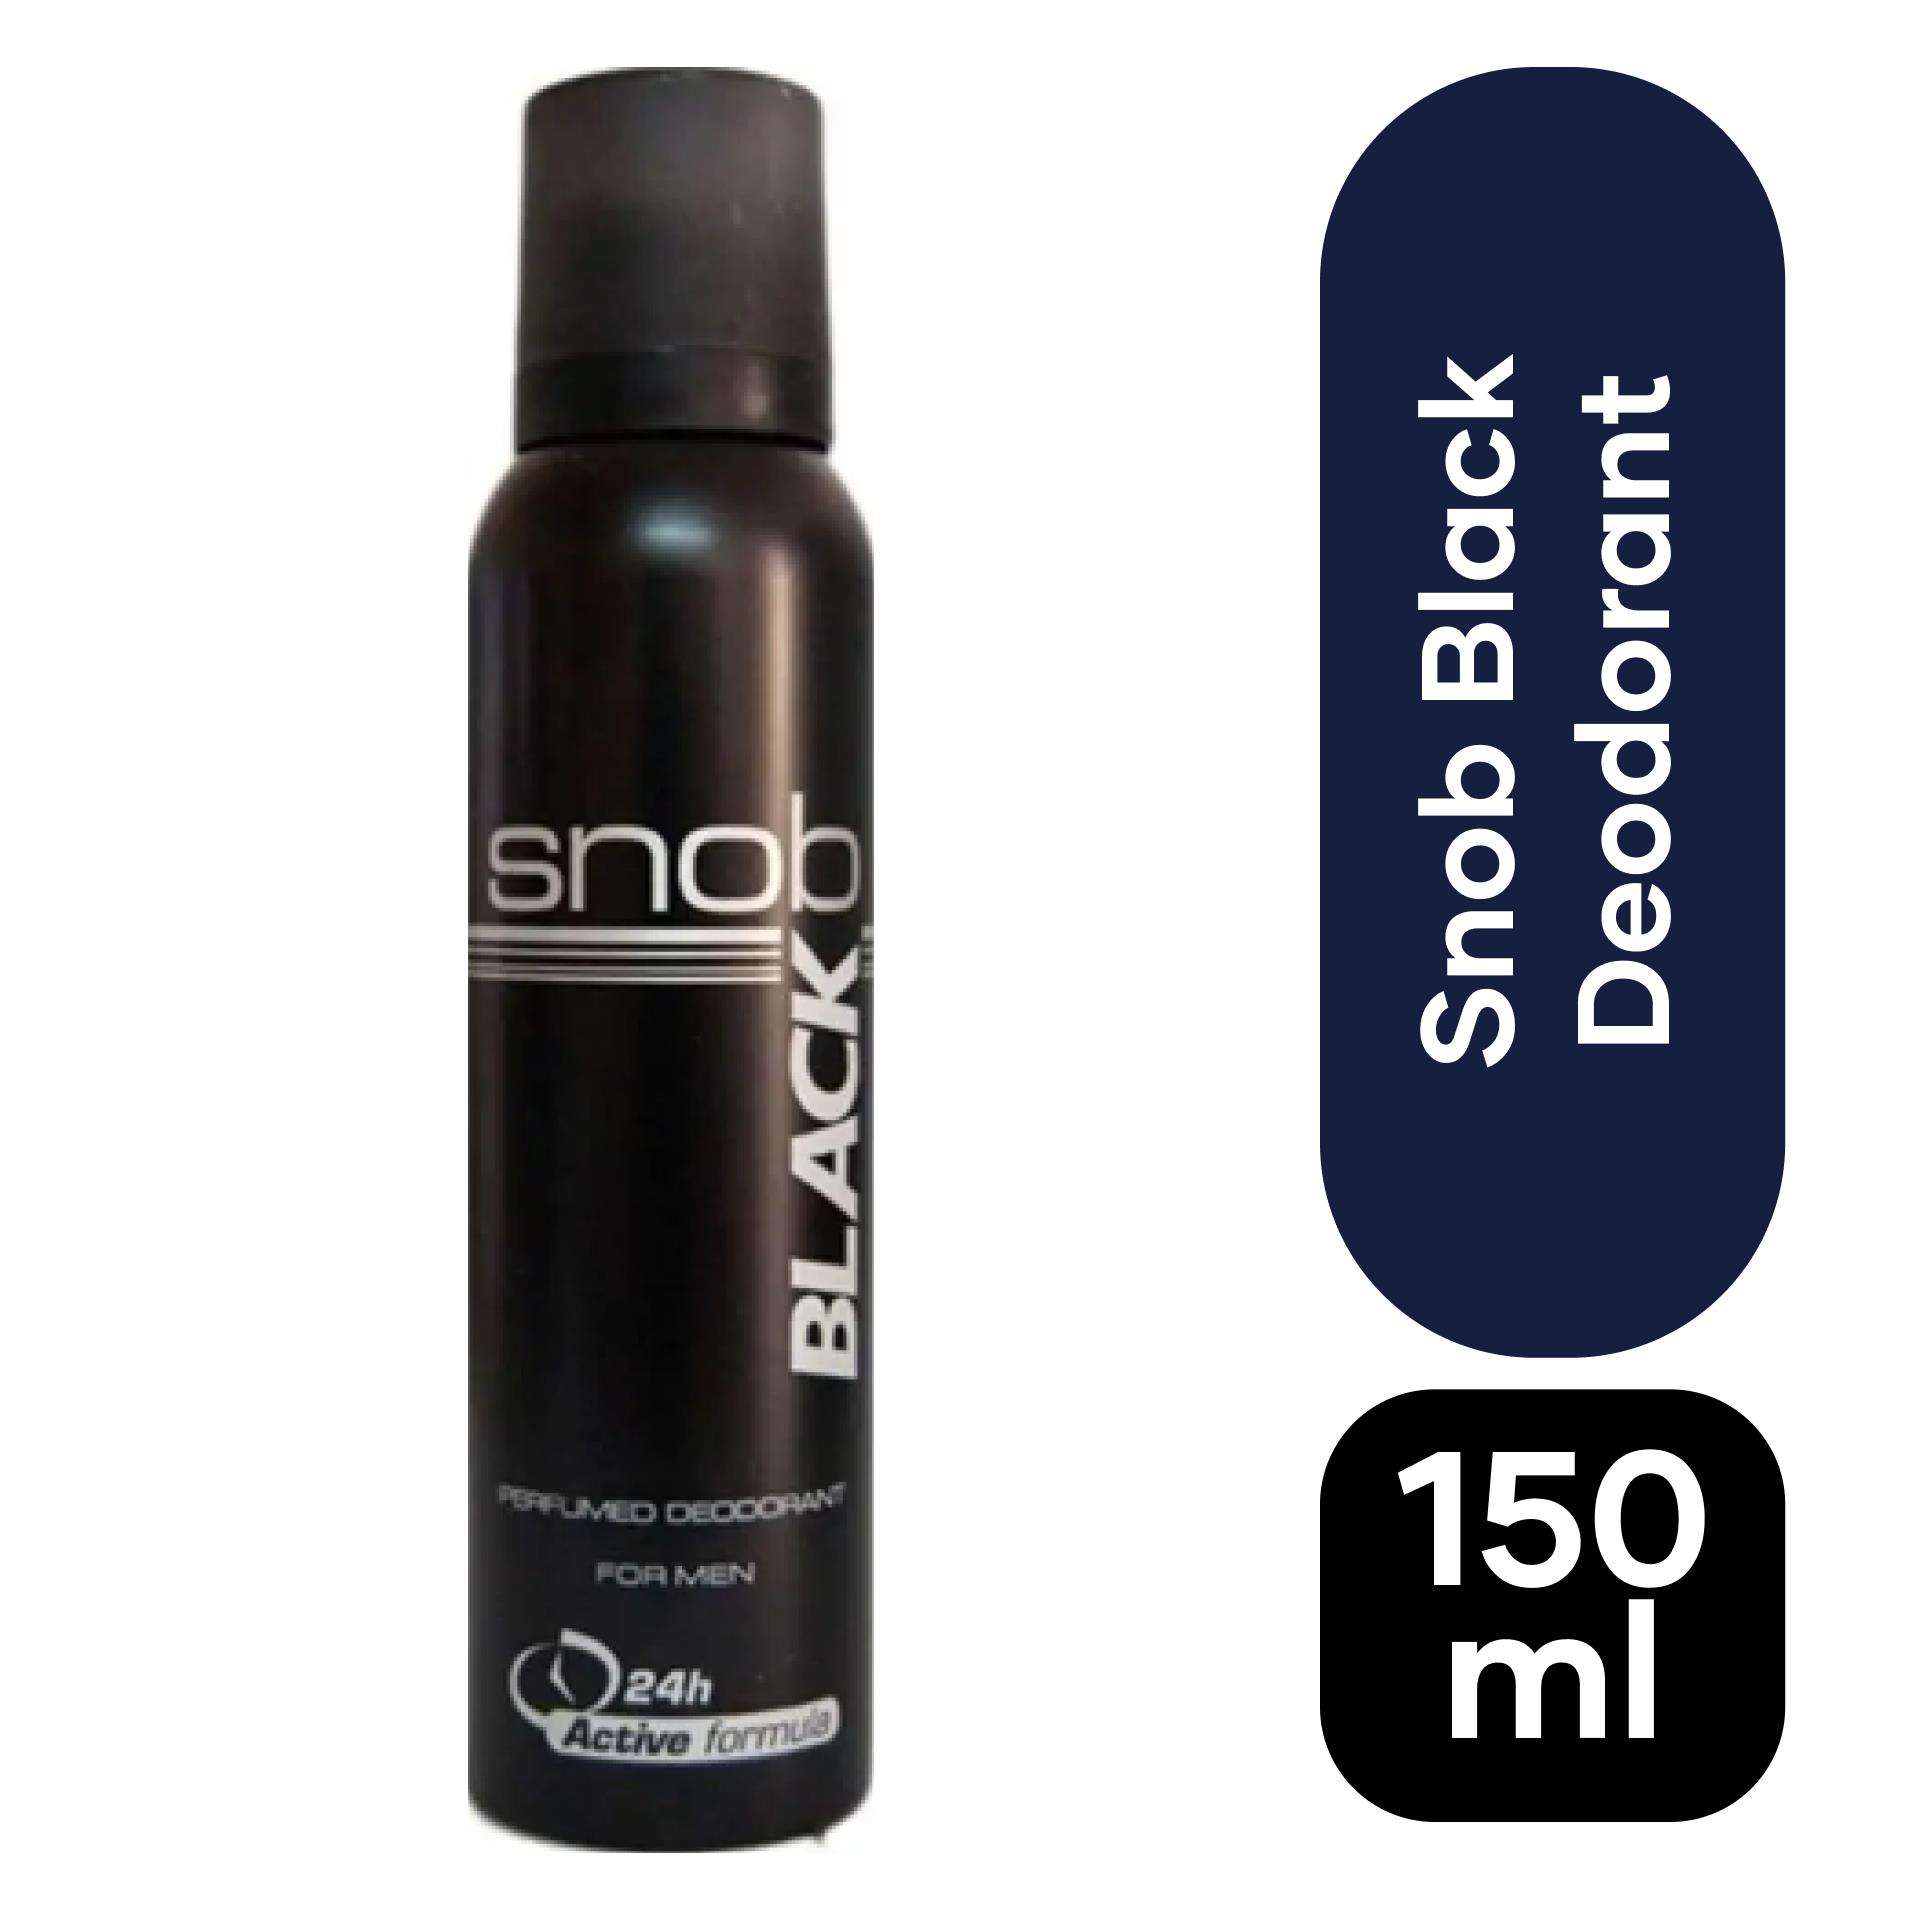 Snob For Men Black Deodorant 150 ml